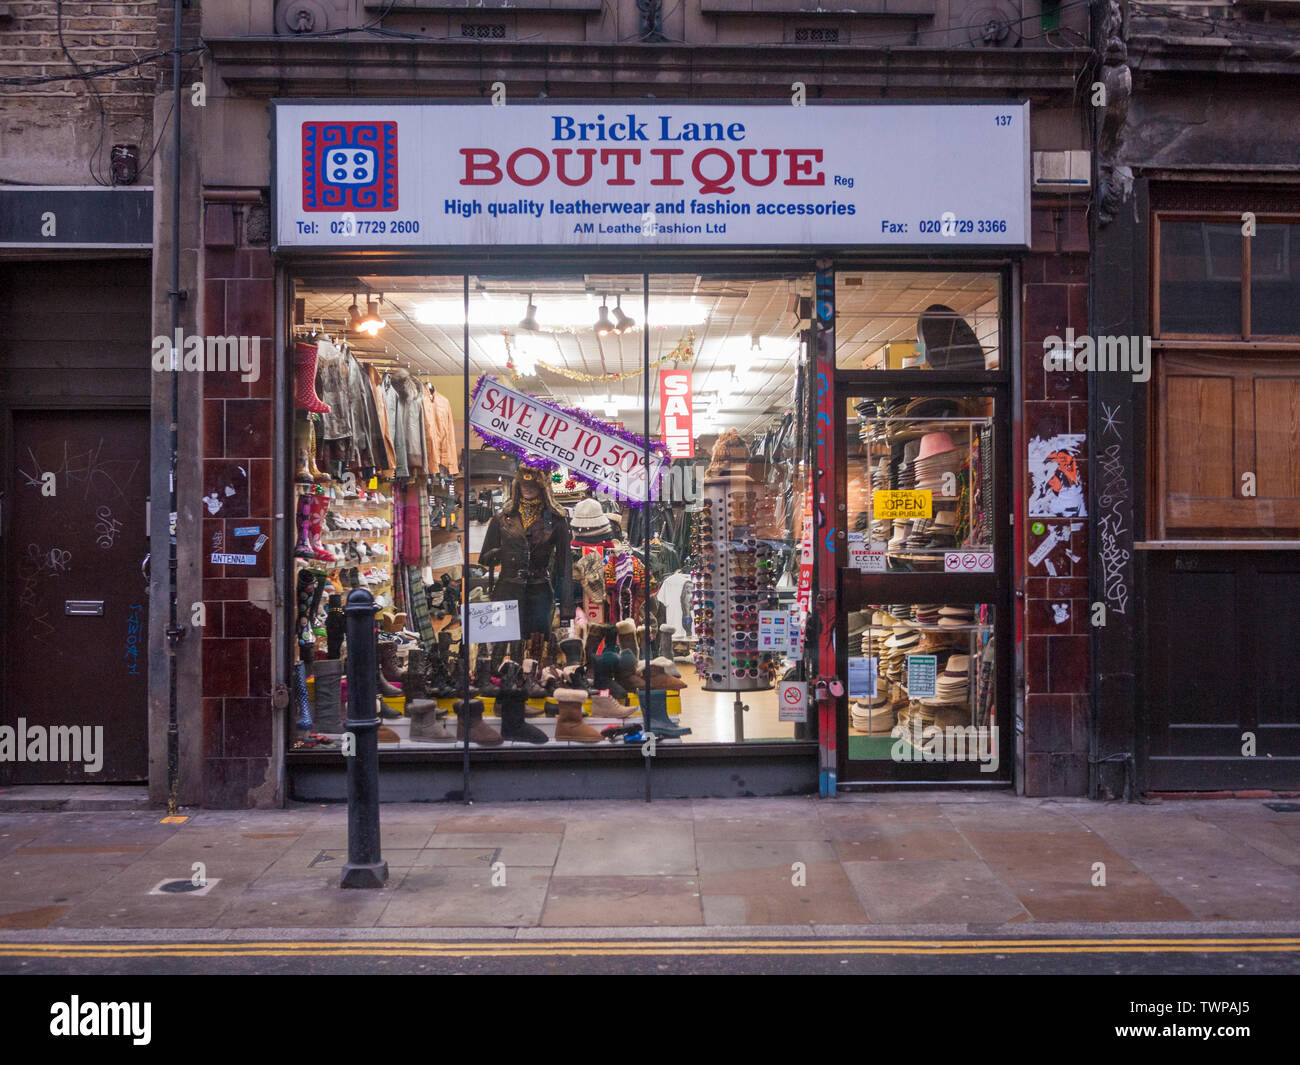 Brick Lane Boutique, eine sinkende Zahl von spezialisierten Kleidung Wiederverkäufer, die Erinnerung an die ehemalige lebendige Kleidung Handel. Stockfoto